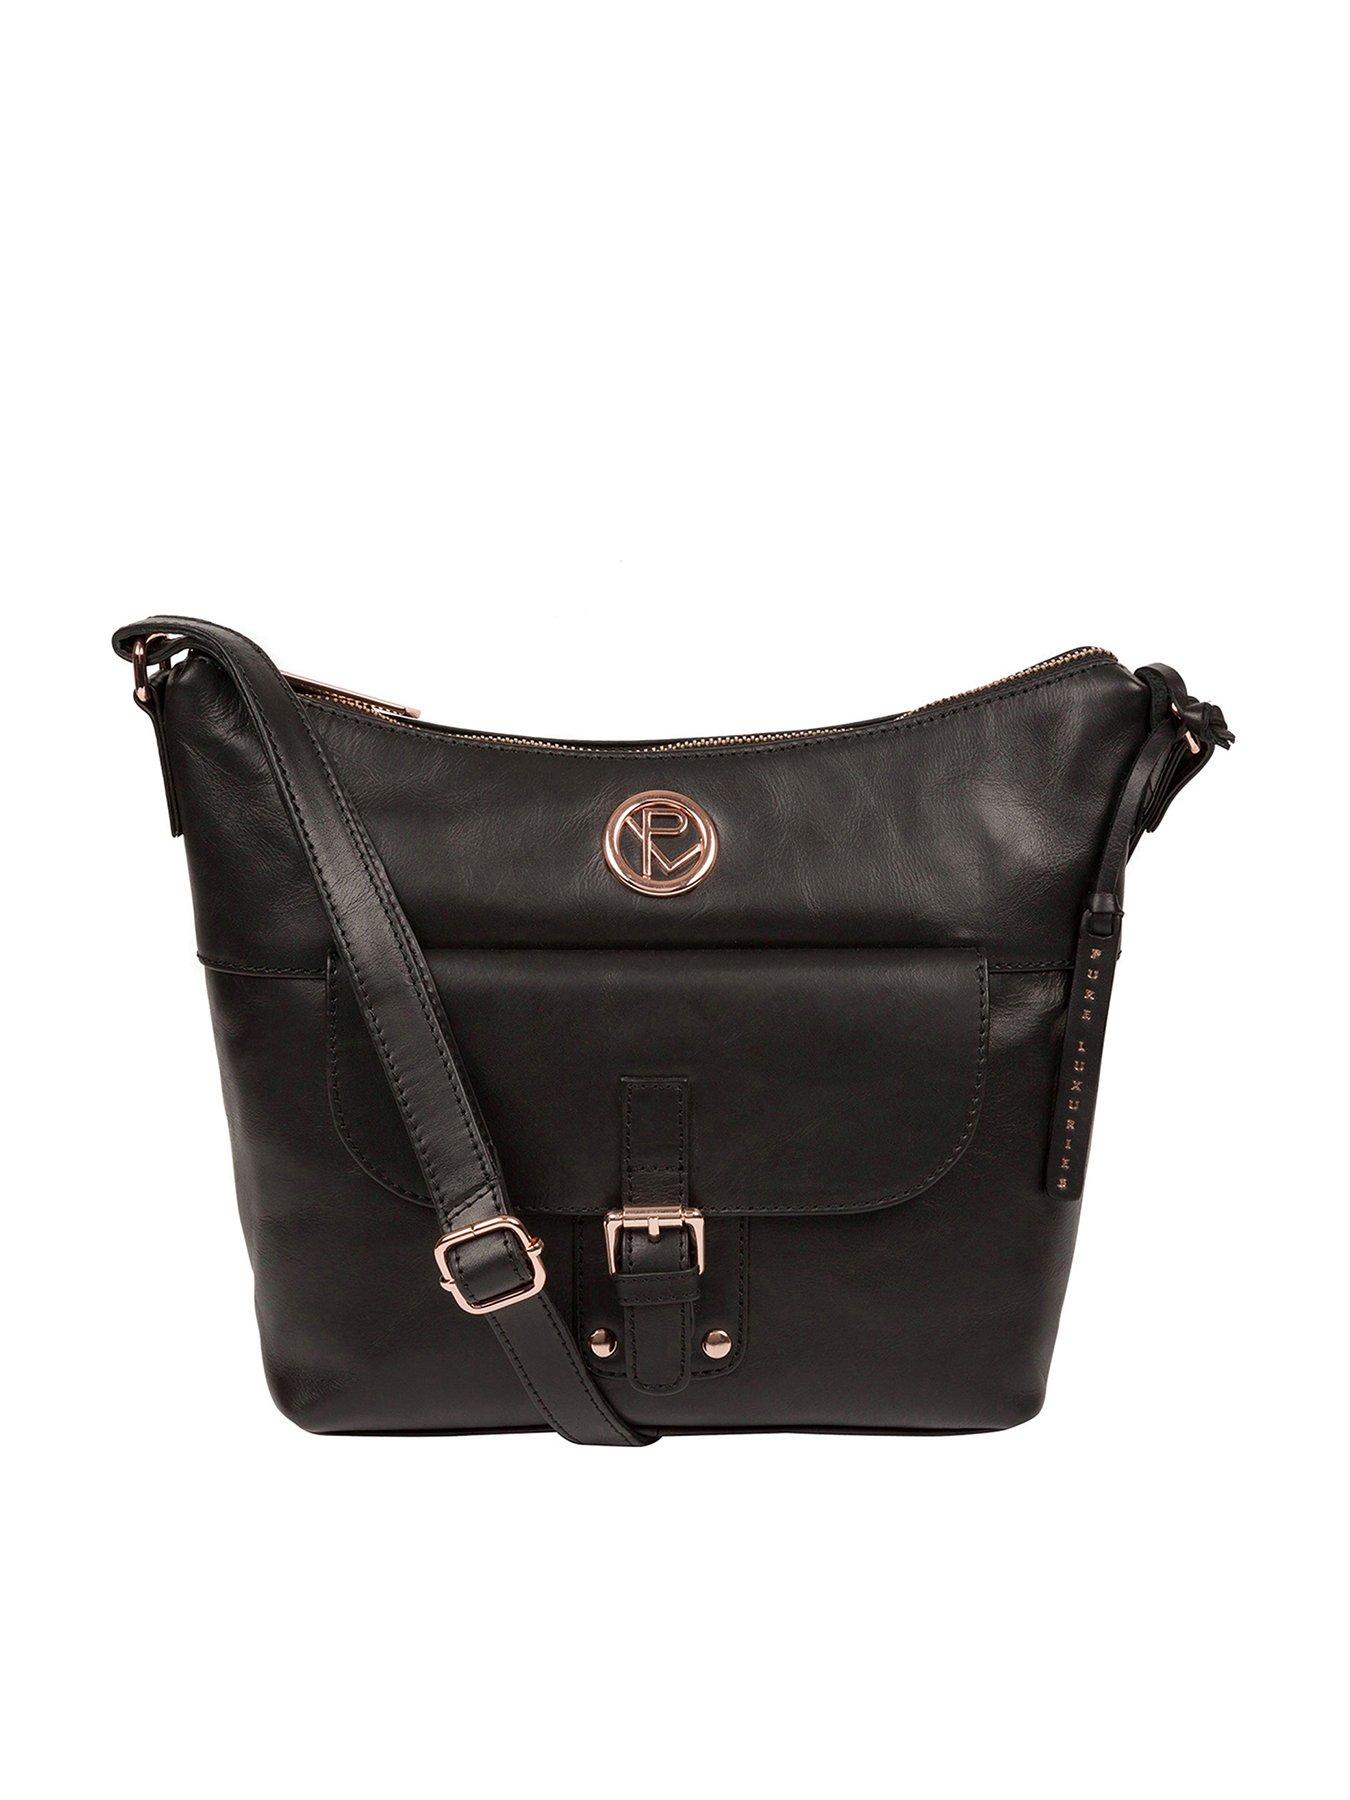 Bags & Purses Monamy Zip Top Leather Shoulder Bag - Black